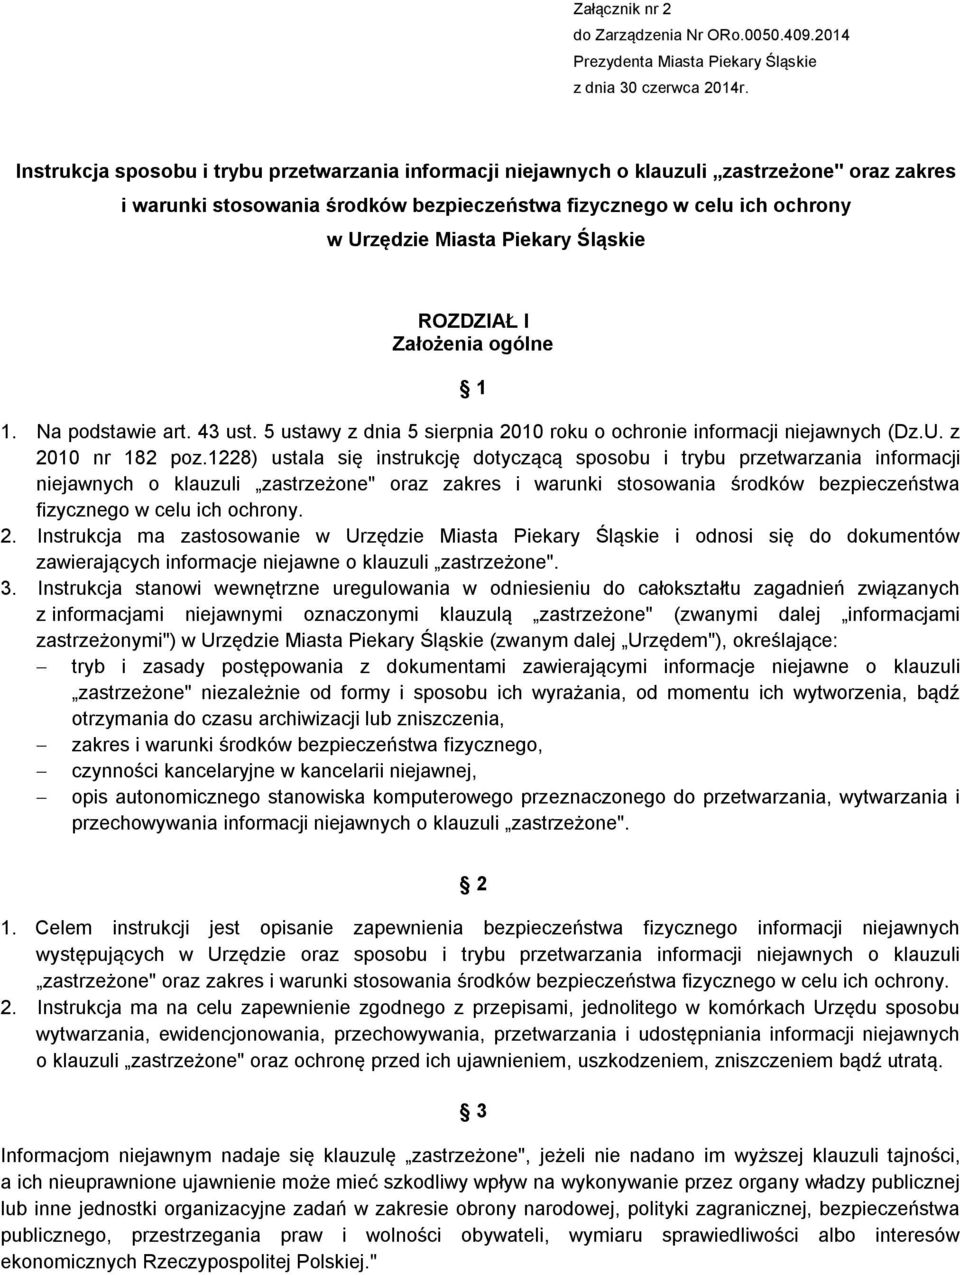 Śląskie ROZDZIAŁ I Założenia ogólne 1 1. Na podstawie art. 43 ust. 5 ustawy z dnia 5 sierpnia 2010 roku o ochronie informacji niejawnych (Dz.U. z 2010 nr 182 poz.